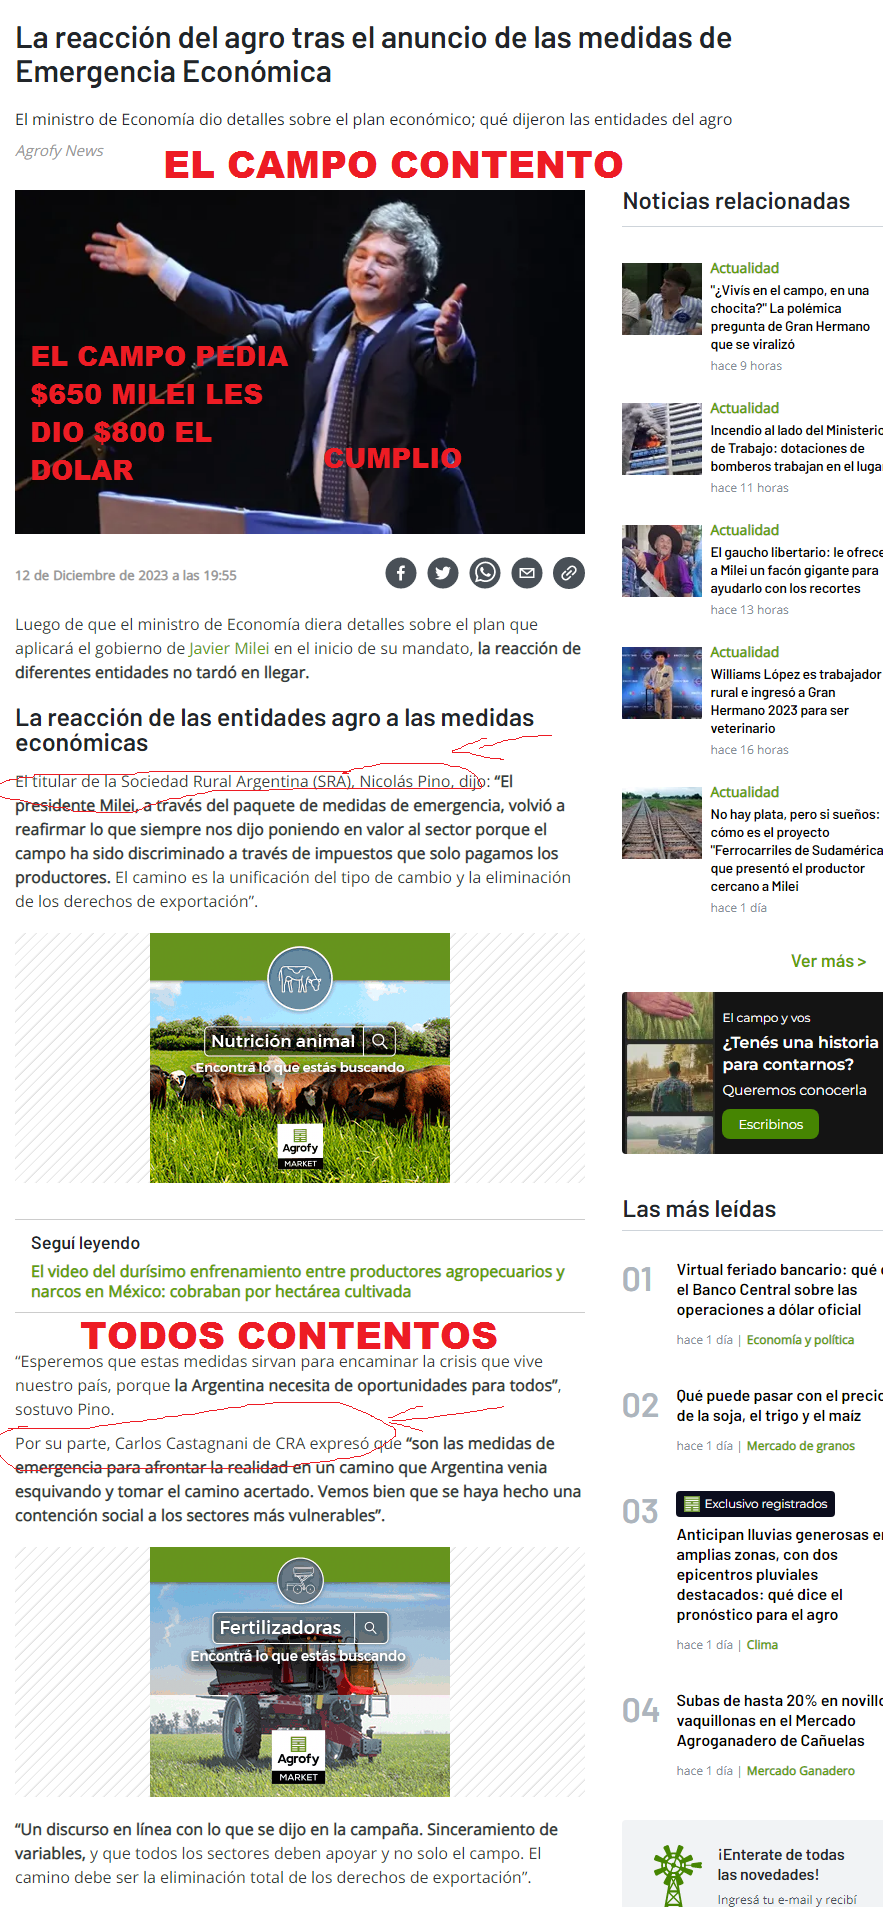 La reacción del agro tras el anuncio de las medidas de Emergencia Eco_ - news.agrofy.com.ar.png